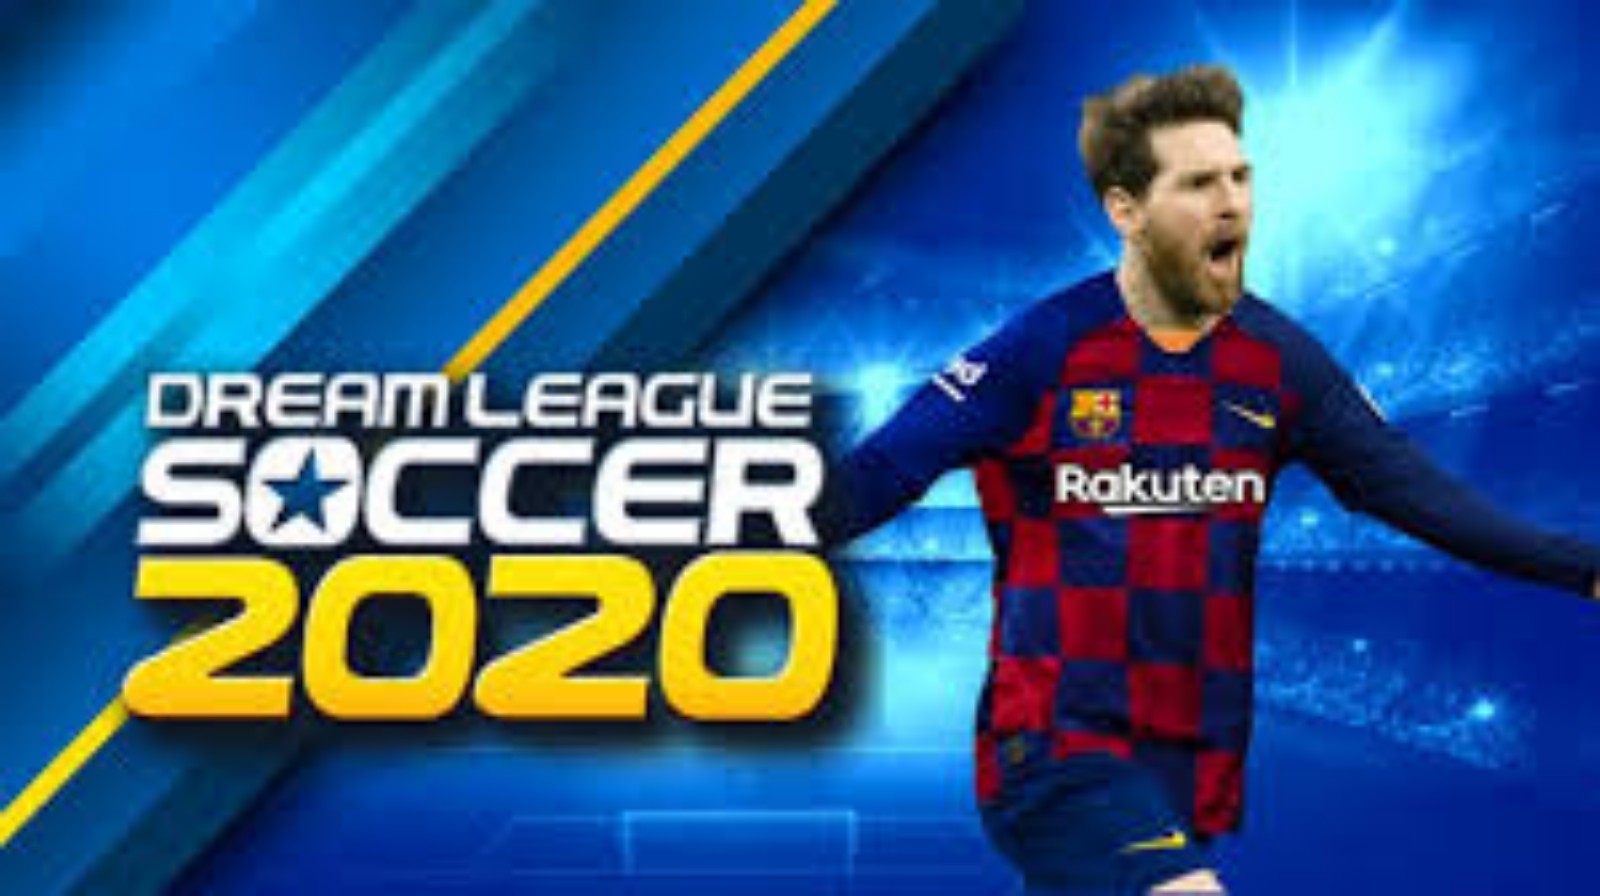 Dream League Soccer 2020 Download DLS Mod Apk Latest